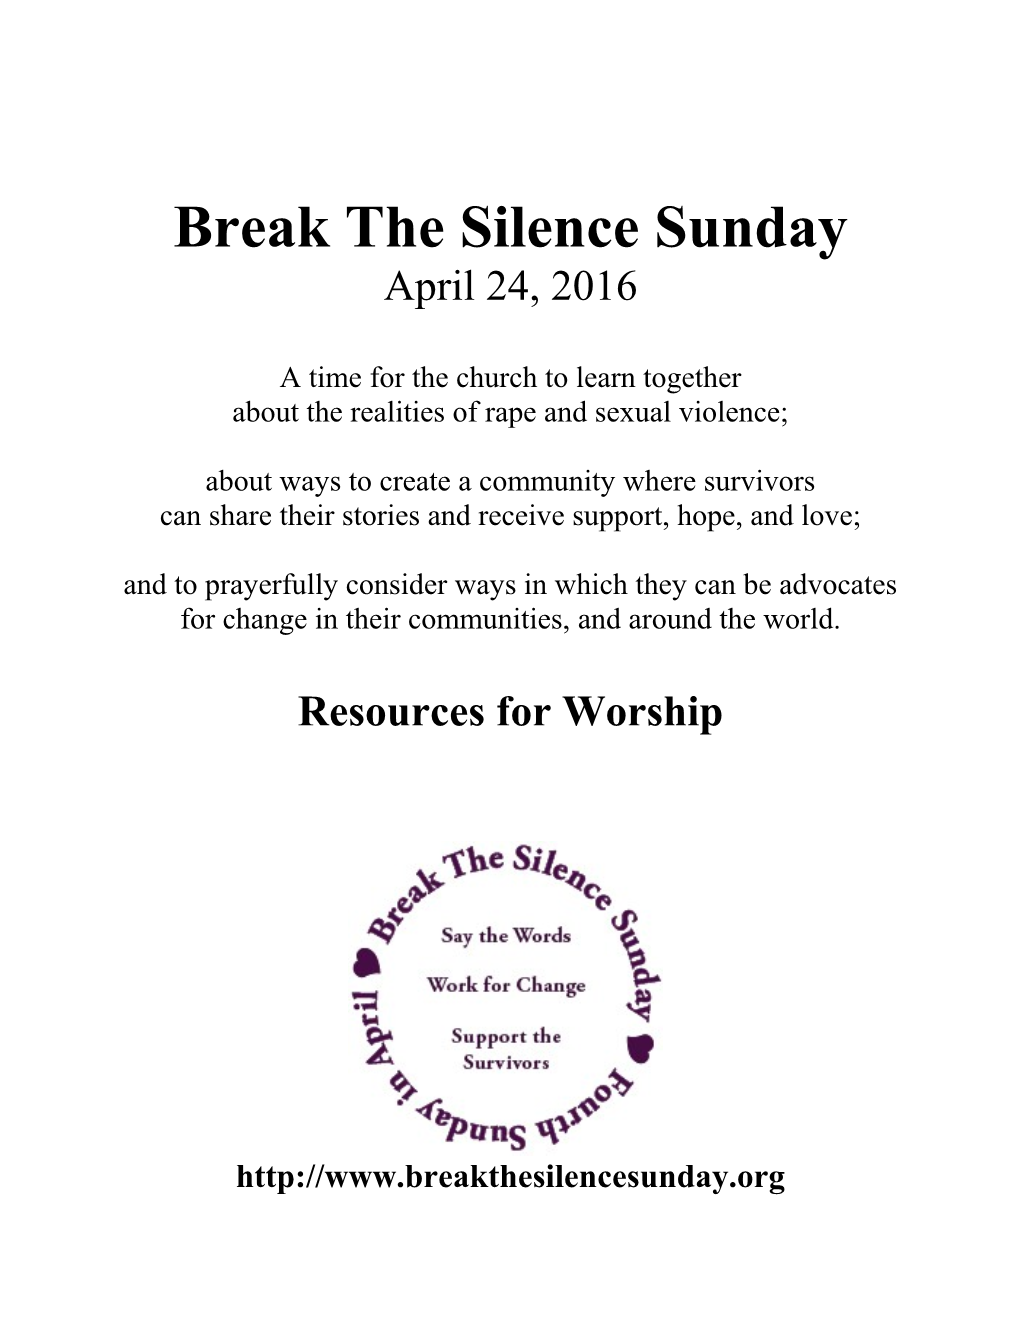 Break the Silence Sunday